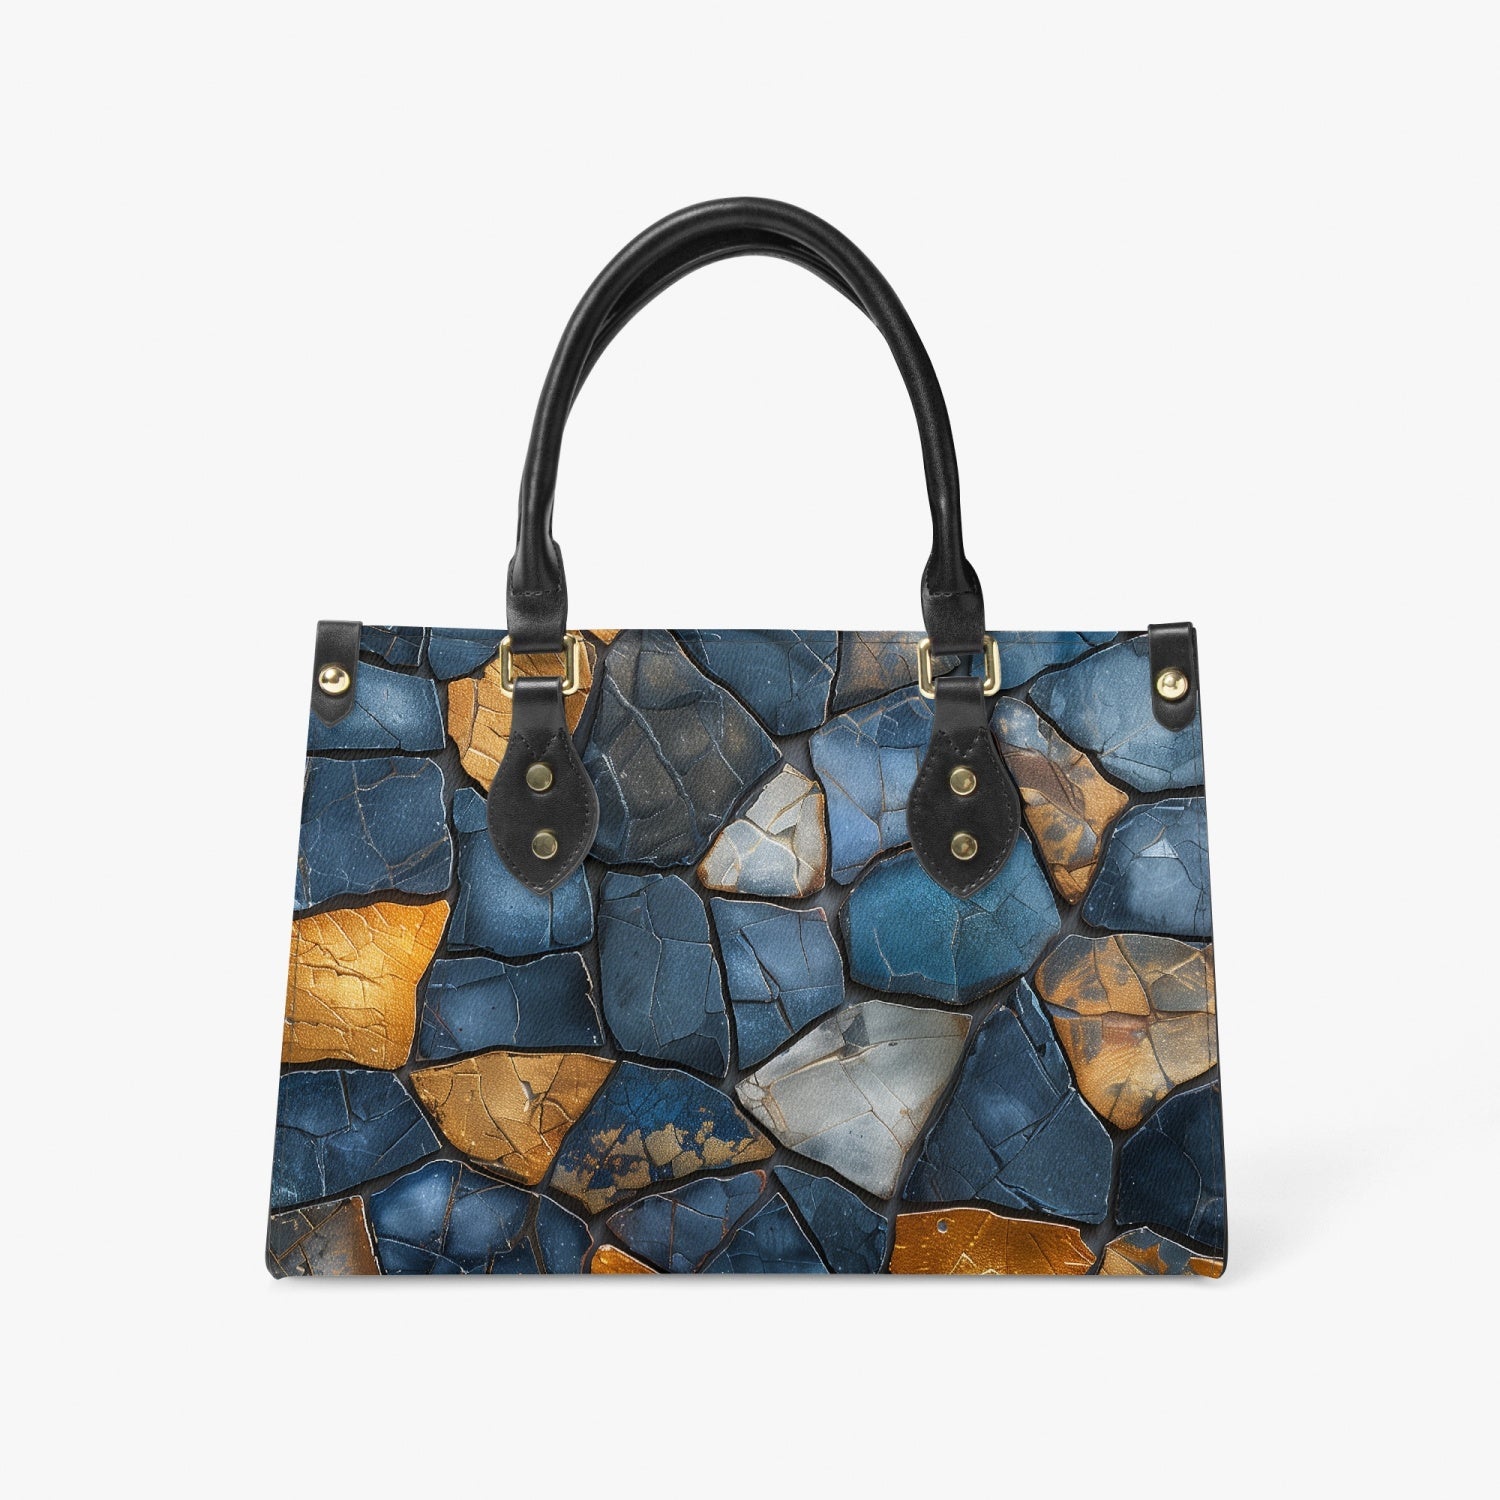 Stone Mosaic Long Strap Bag black strap